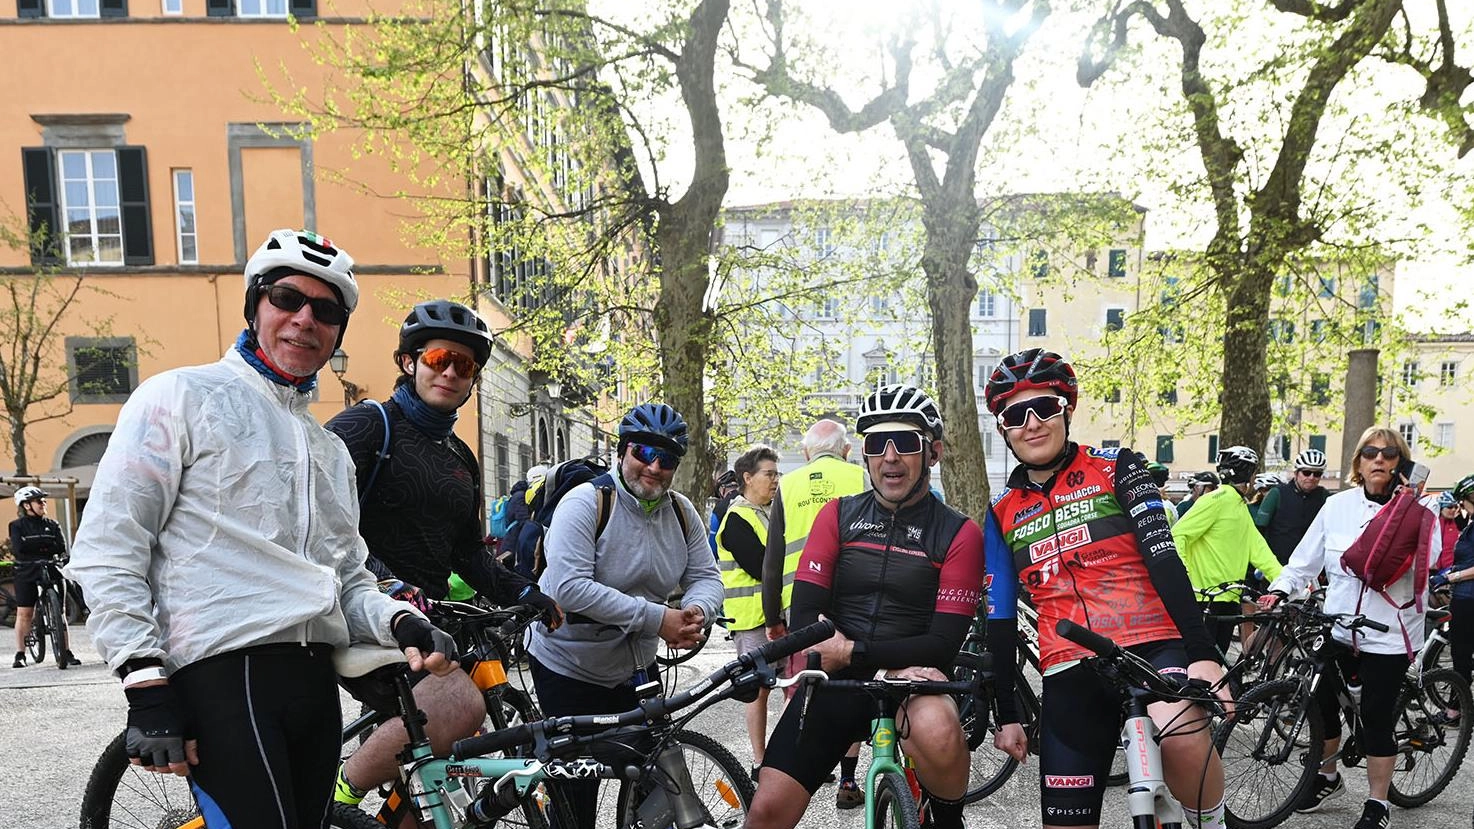 I negozianti lucchesi confermano la tendenza e l’interesse in crescita per il ciclismo sportivo e non solo. Laurie Warren di Amici Bici: “Molti turisti vogliono venire a fare lo stesso percorso della corsa rosa".